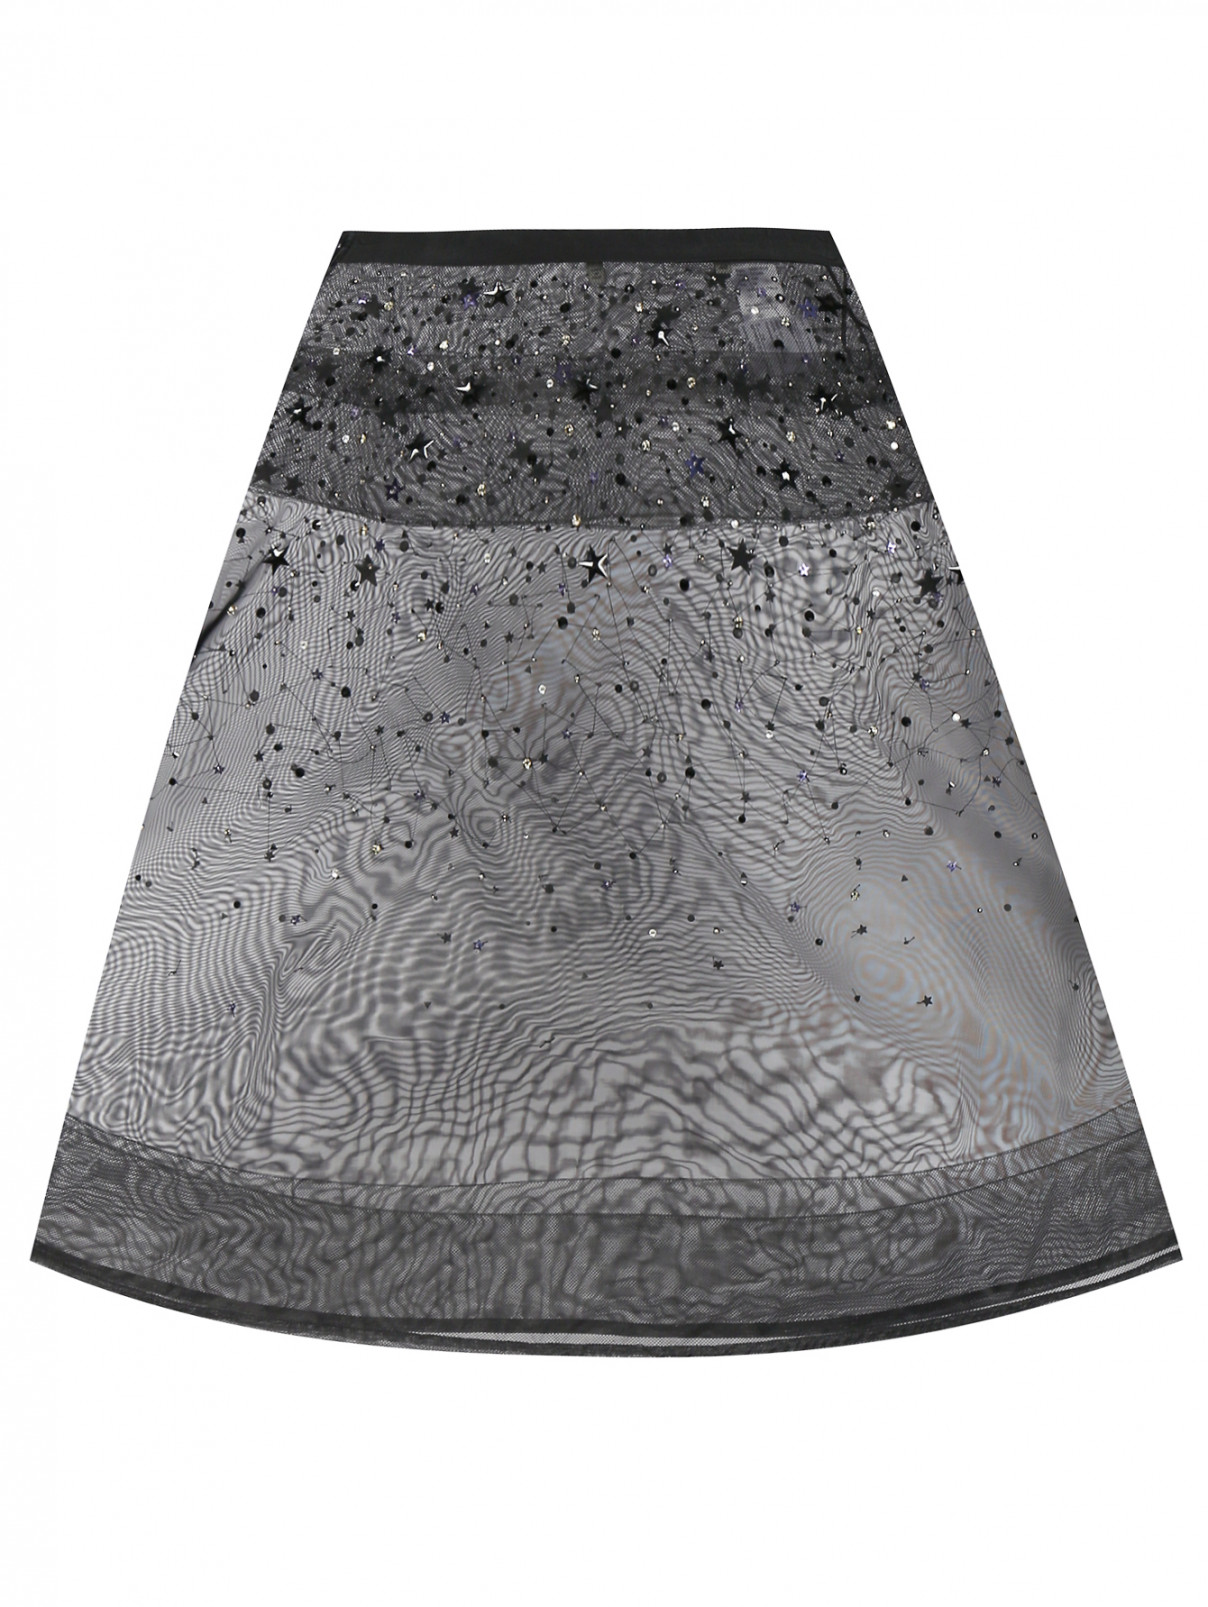 Юбка-миди, декорированная бисером, стразами и кристаллами Jean Paul Gaultier  –  Общий вид  – Цвет:  Черный